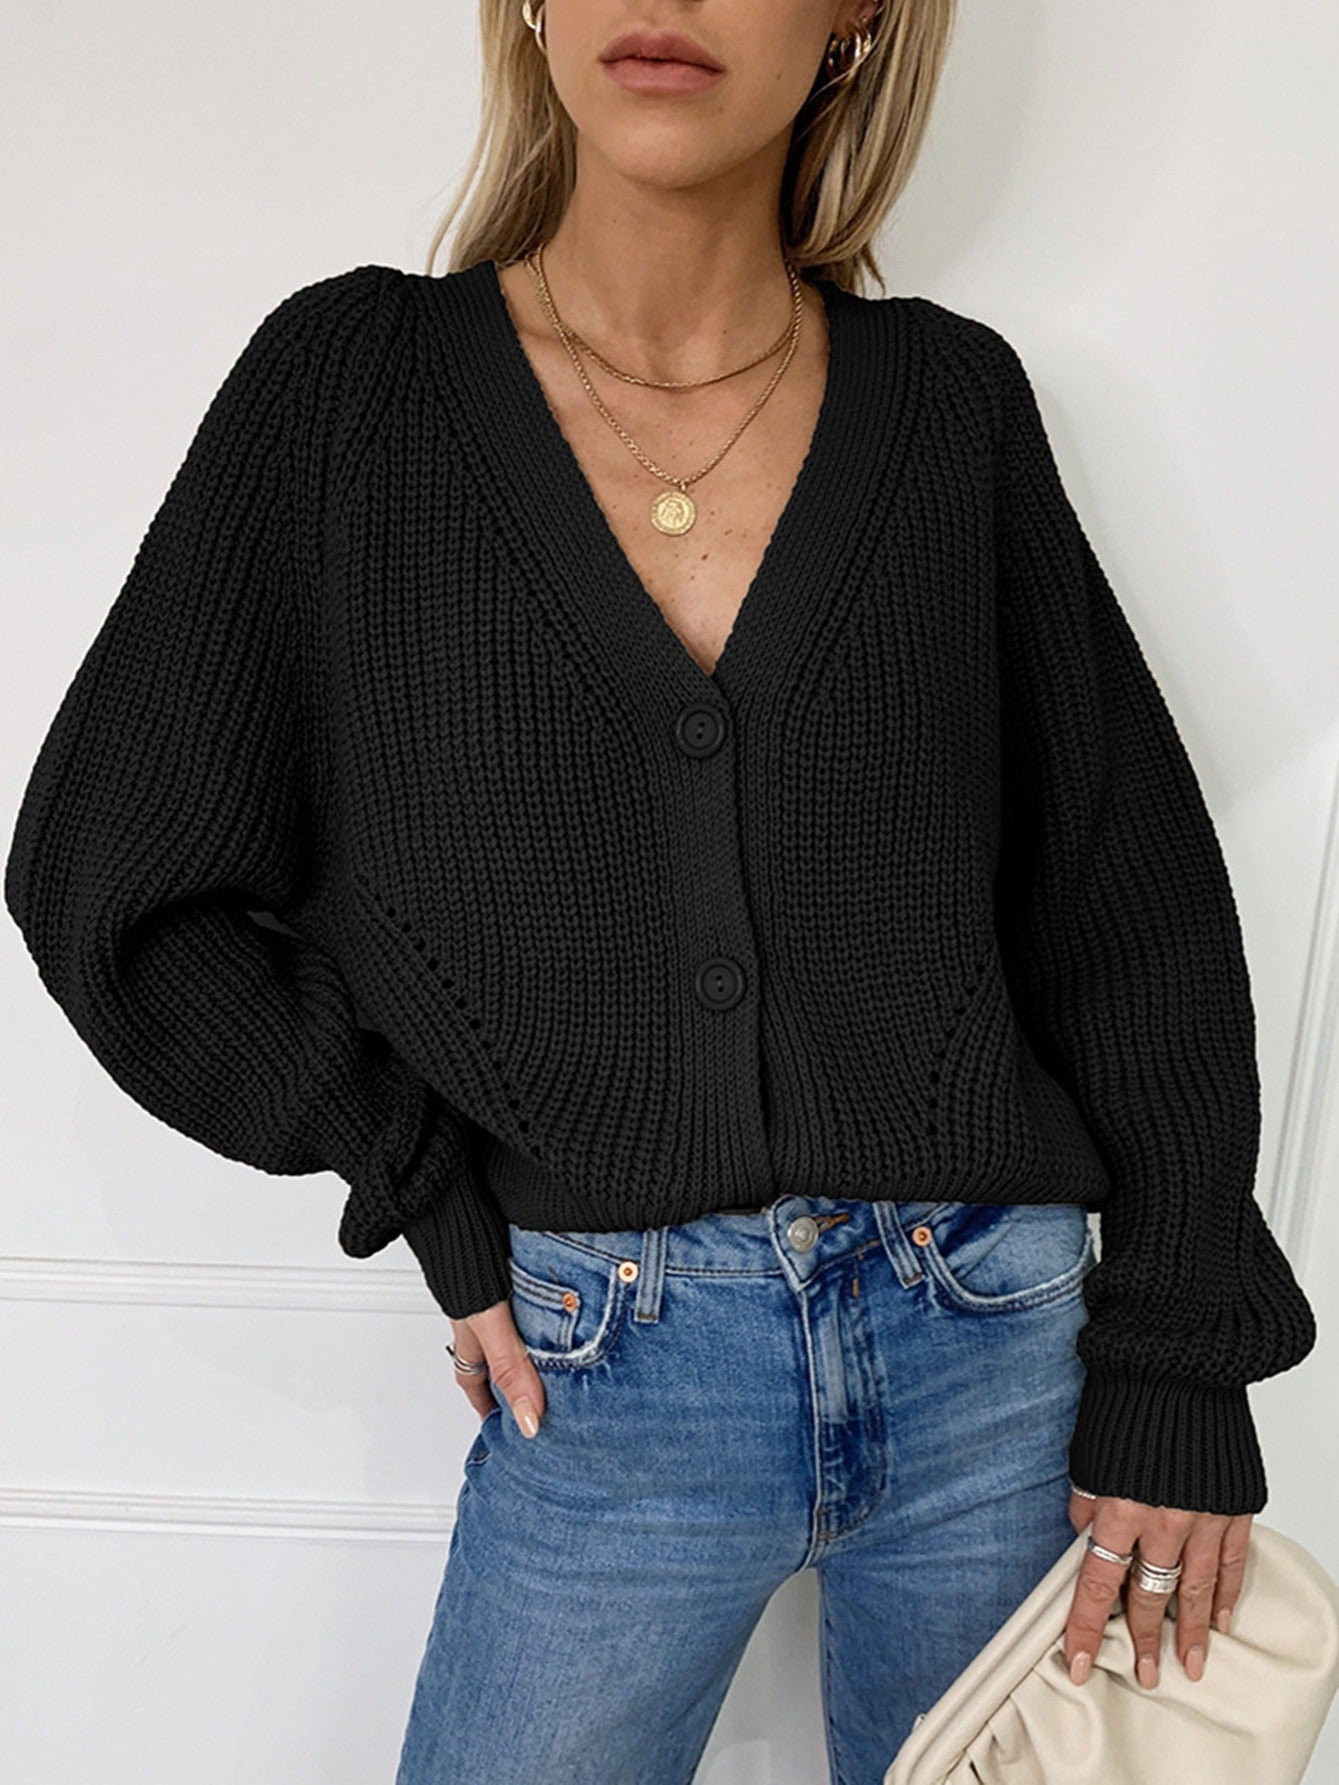 Vzyzv Women's Sweater Solid V-neck Button Up Knit Cardigan